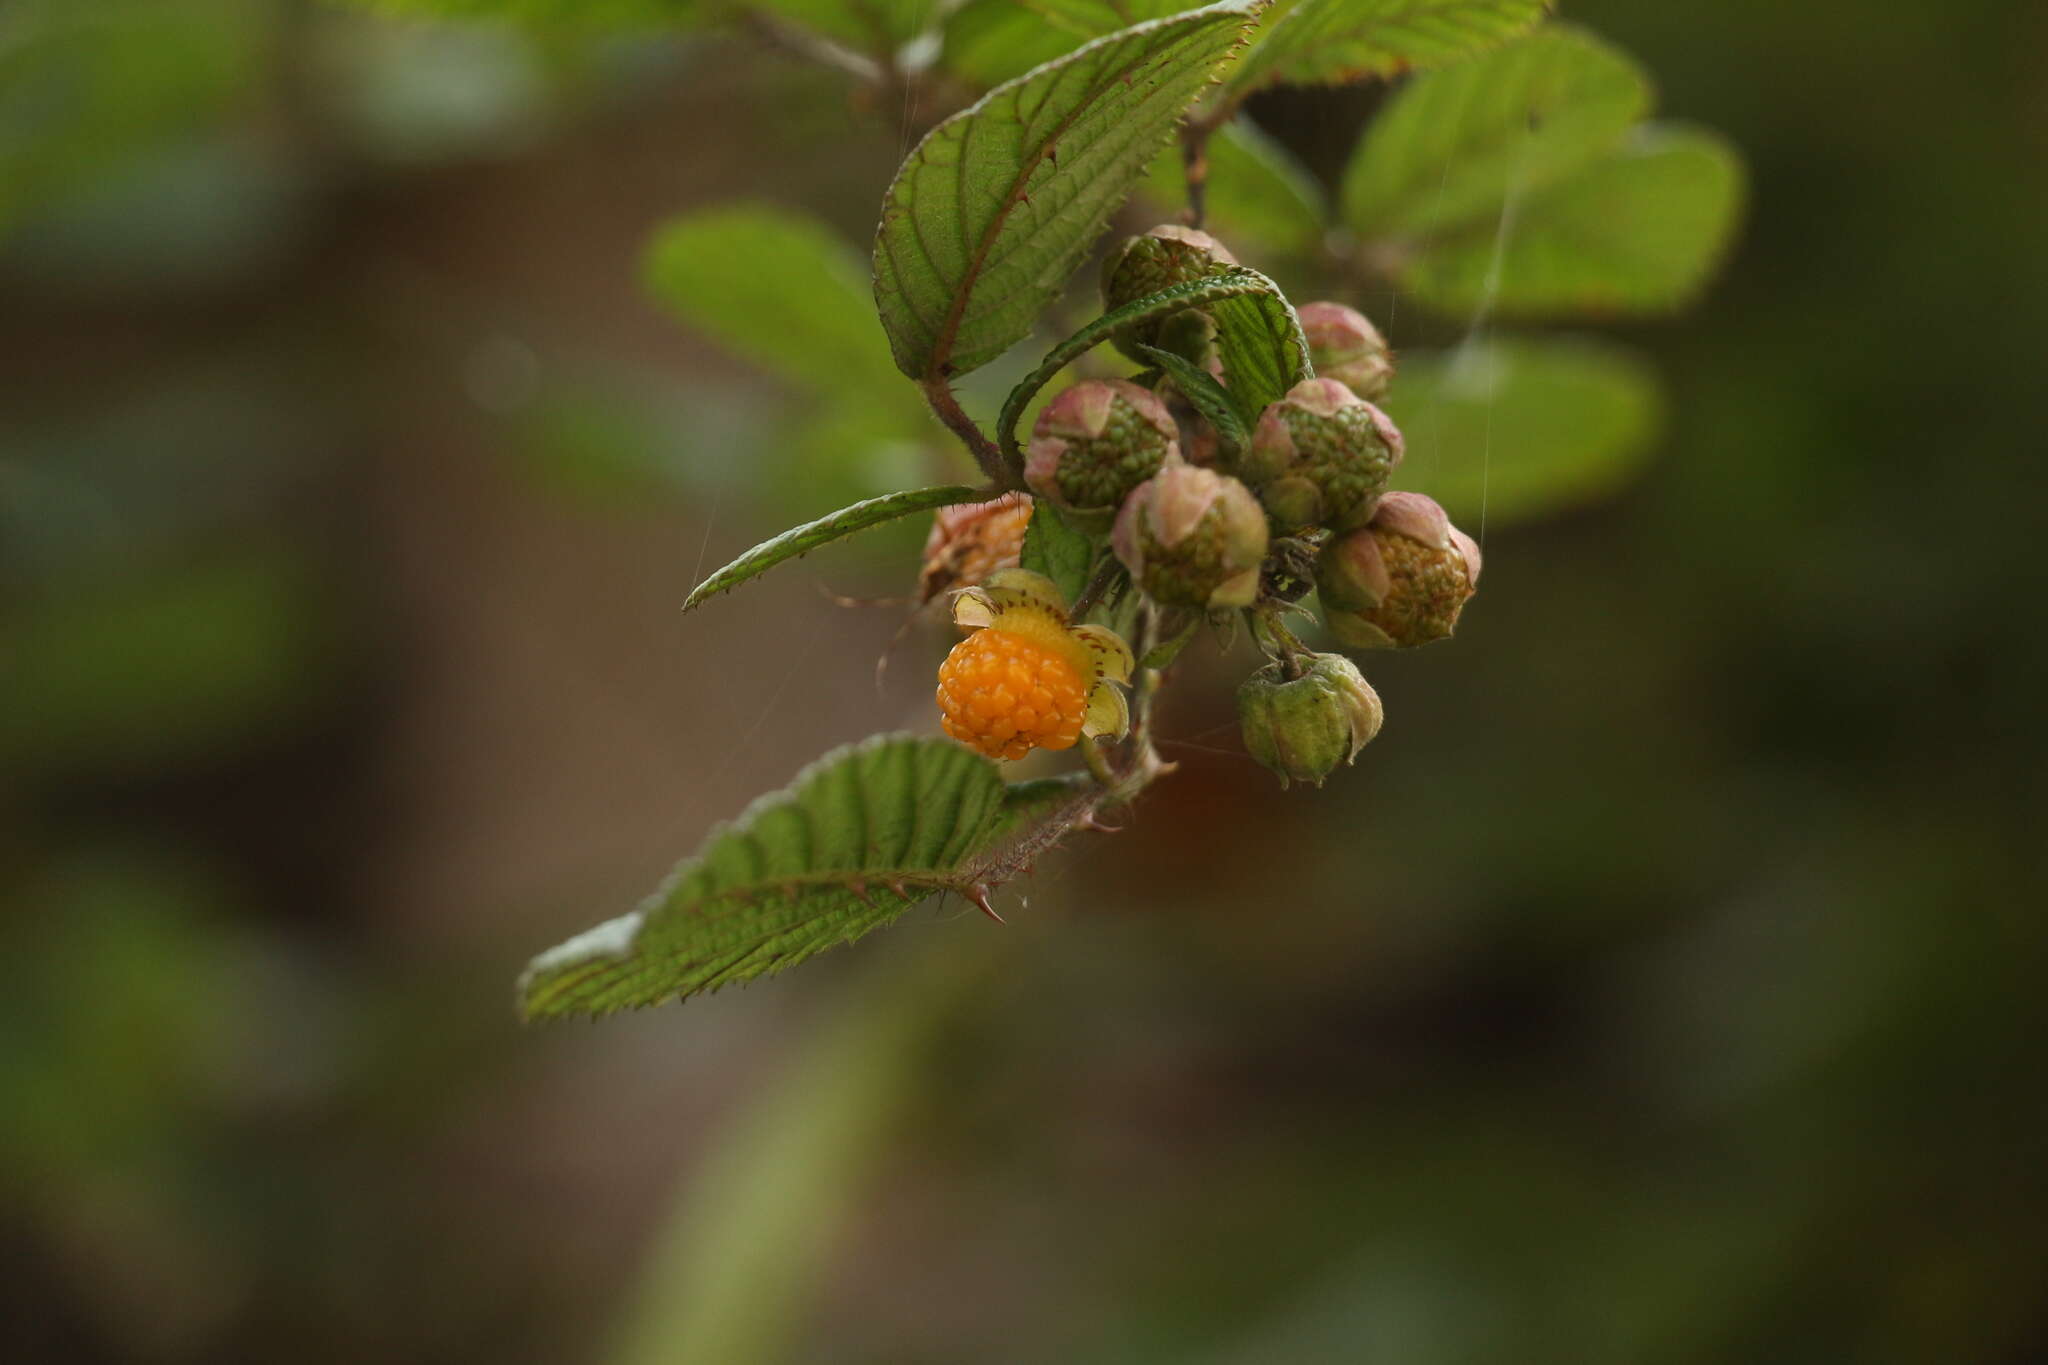 Image of yellow Himalayan raspberry